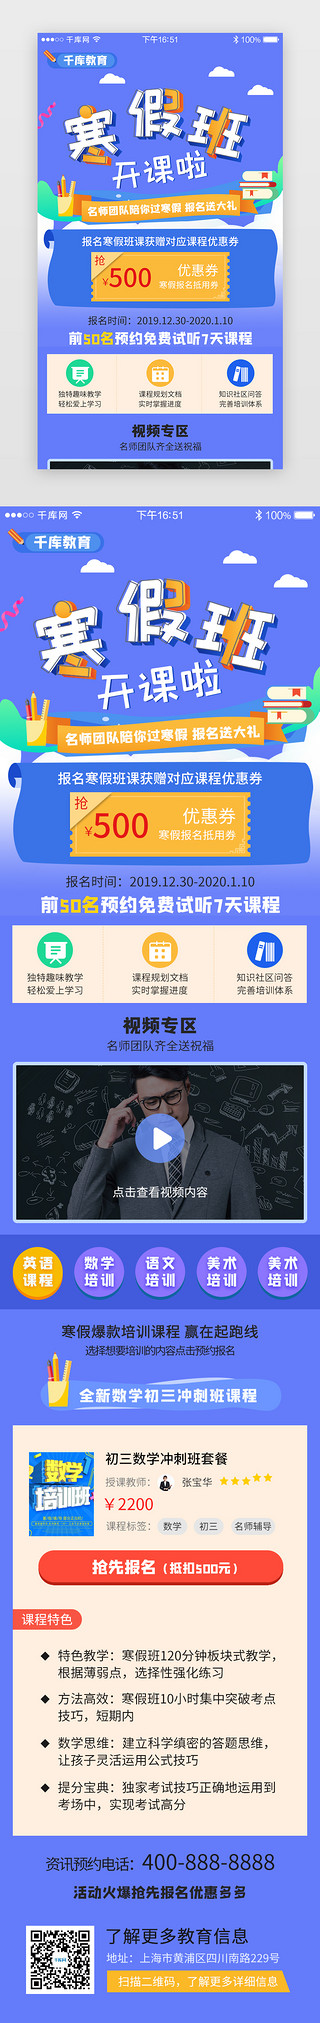 培训活动活动UI设计素材_蓝色系app寒假培训教育H5